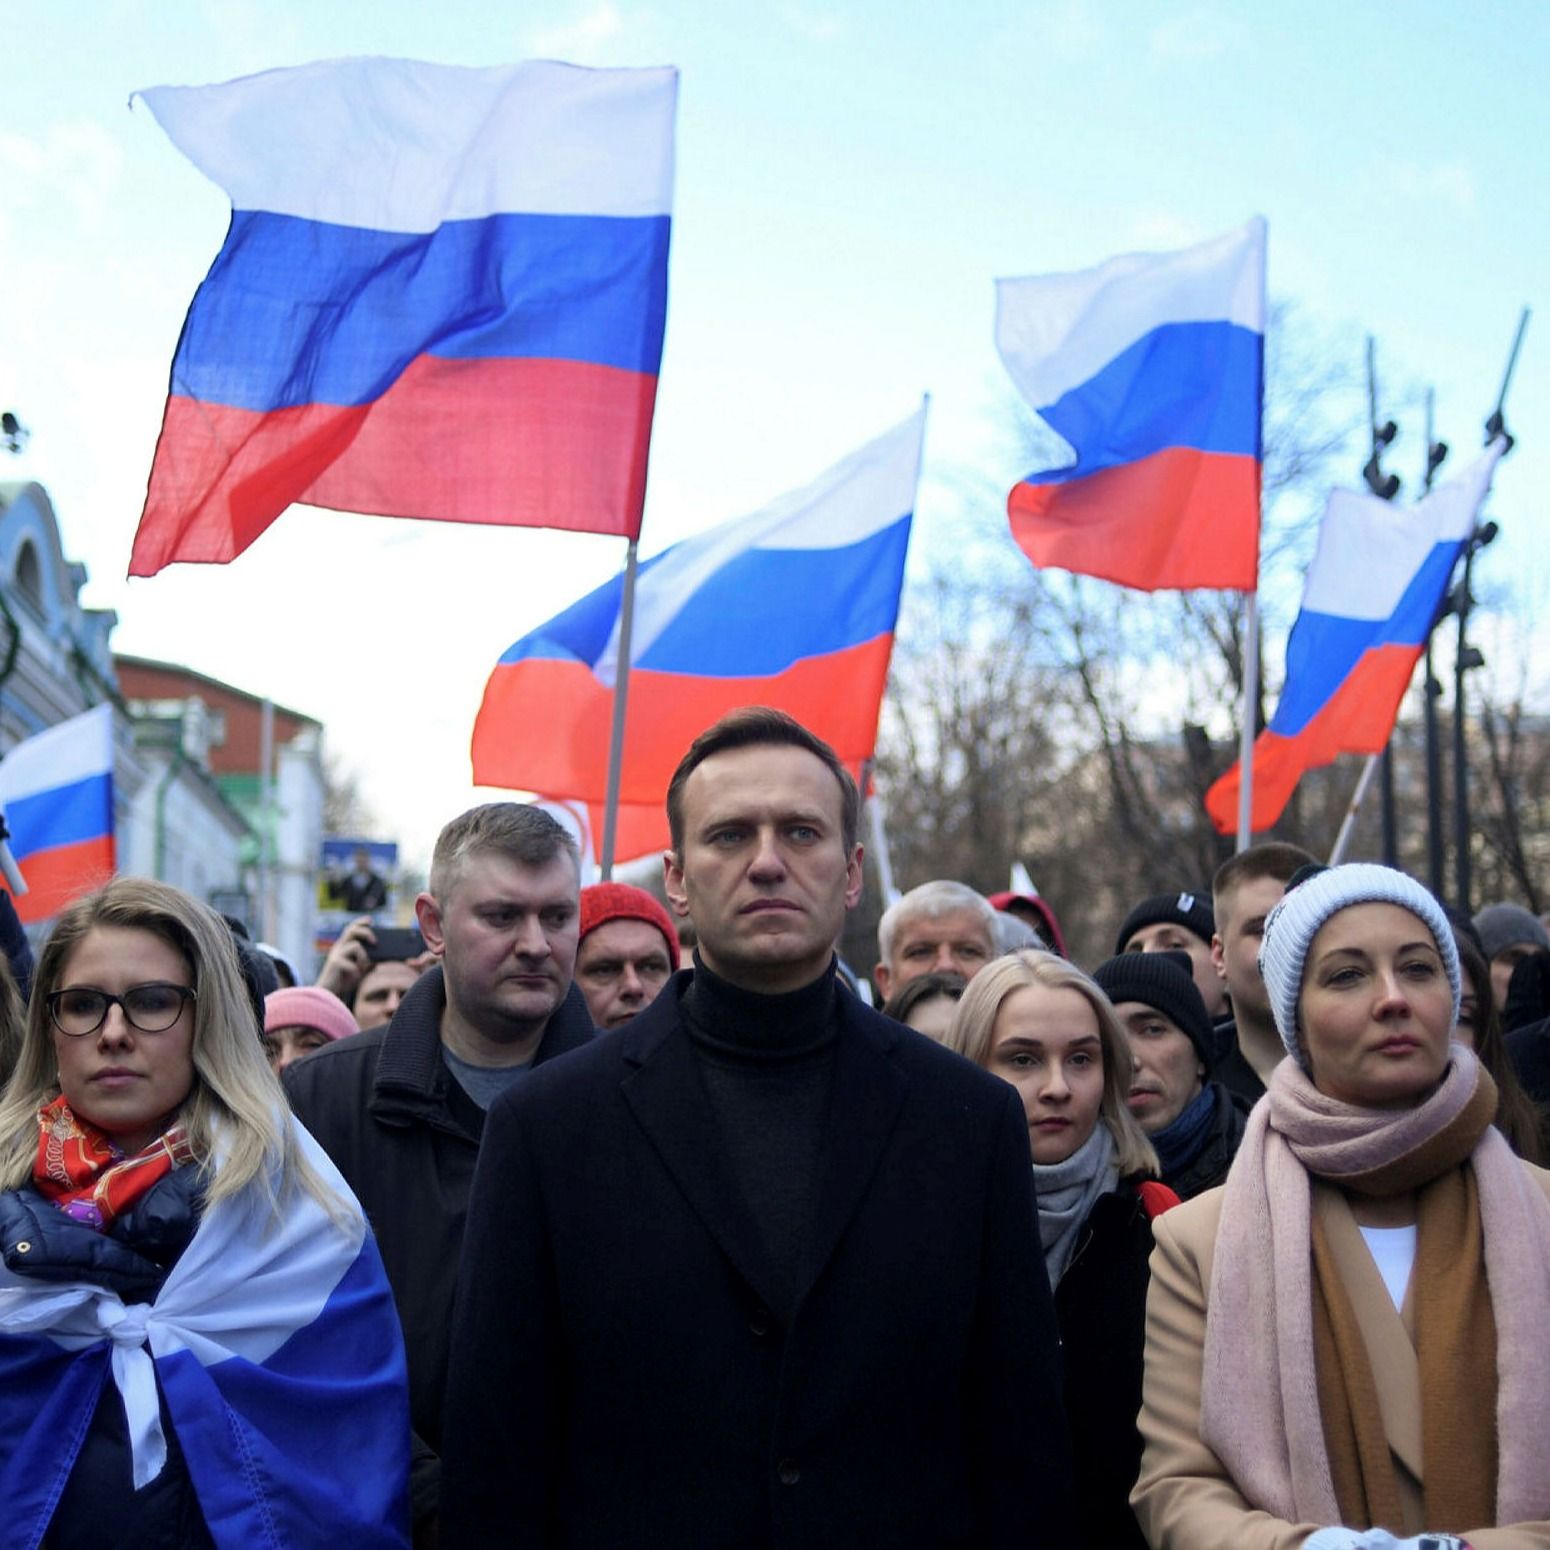 纳瓦尔尼、他的妻子尤利娅、反对派政治家吕博夫•索博尔和其他示威者在2020年2月莫斯科市为纪念被谋杀的克里姆林宫批评家鲍里斯•涅姆佐夫而游行